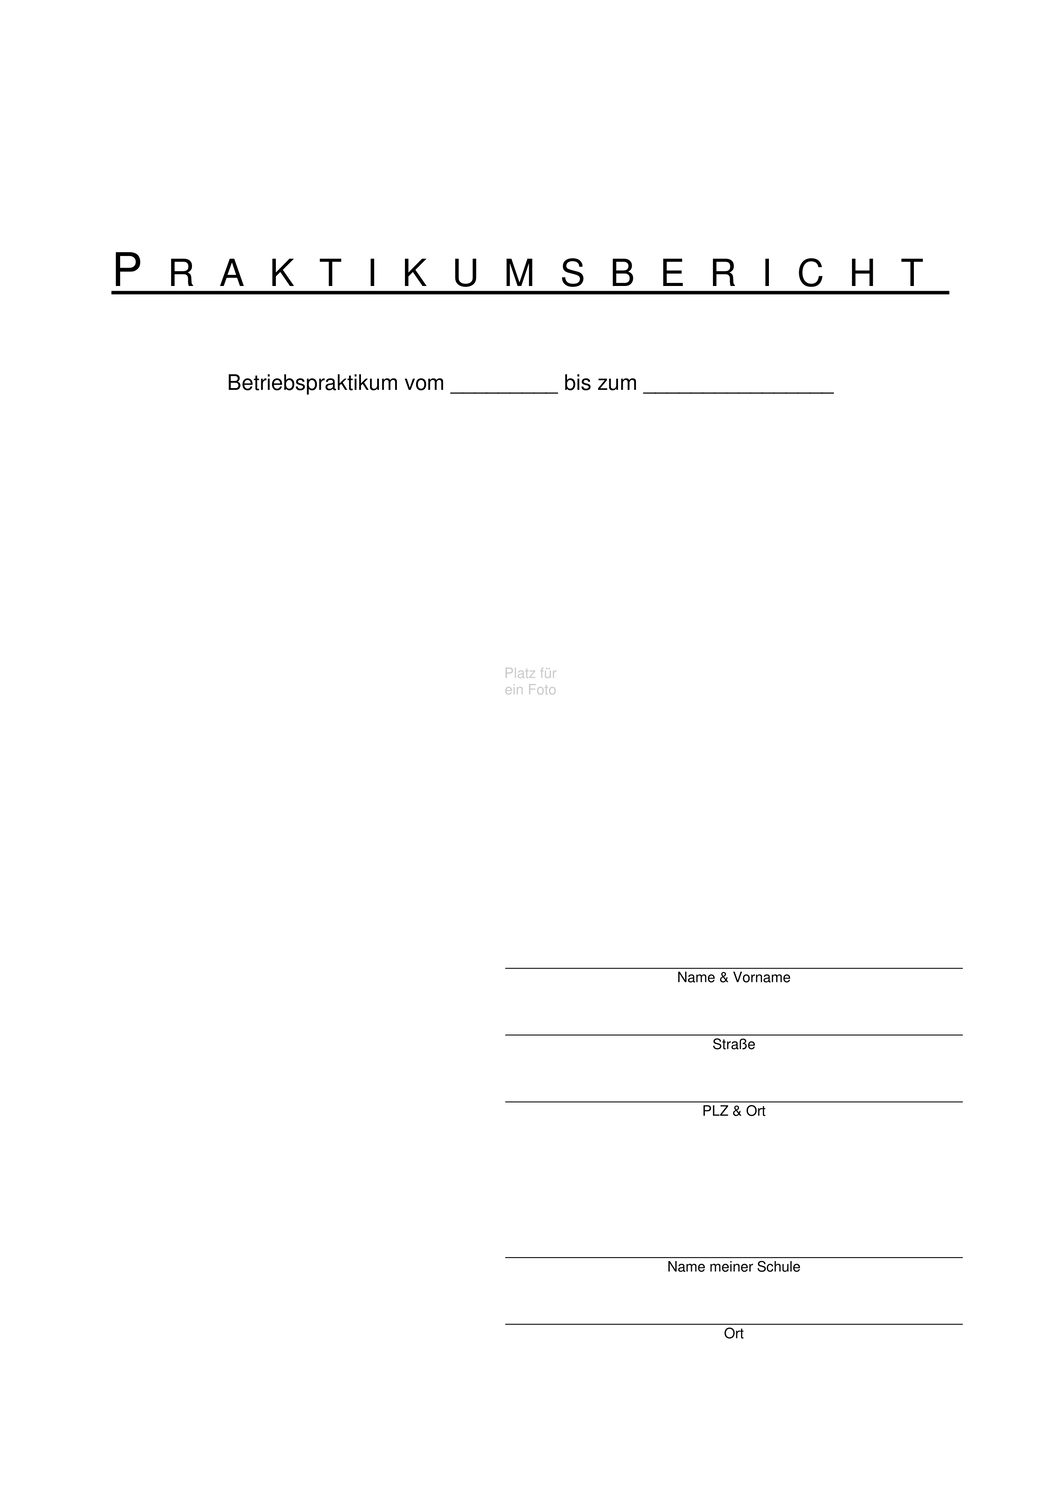 Praktikumsbericht Unterrichtsmaterial In Den Fachern Arbeitslehre Deutsch Praktikumsbericht Forderschule Unterrichtsmaterial